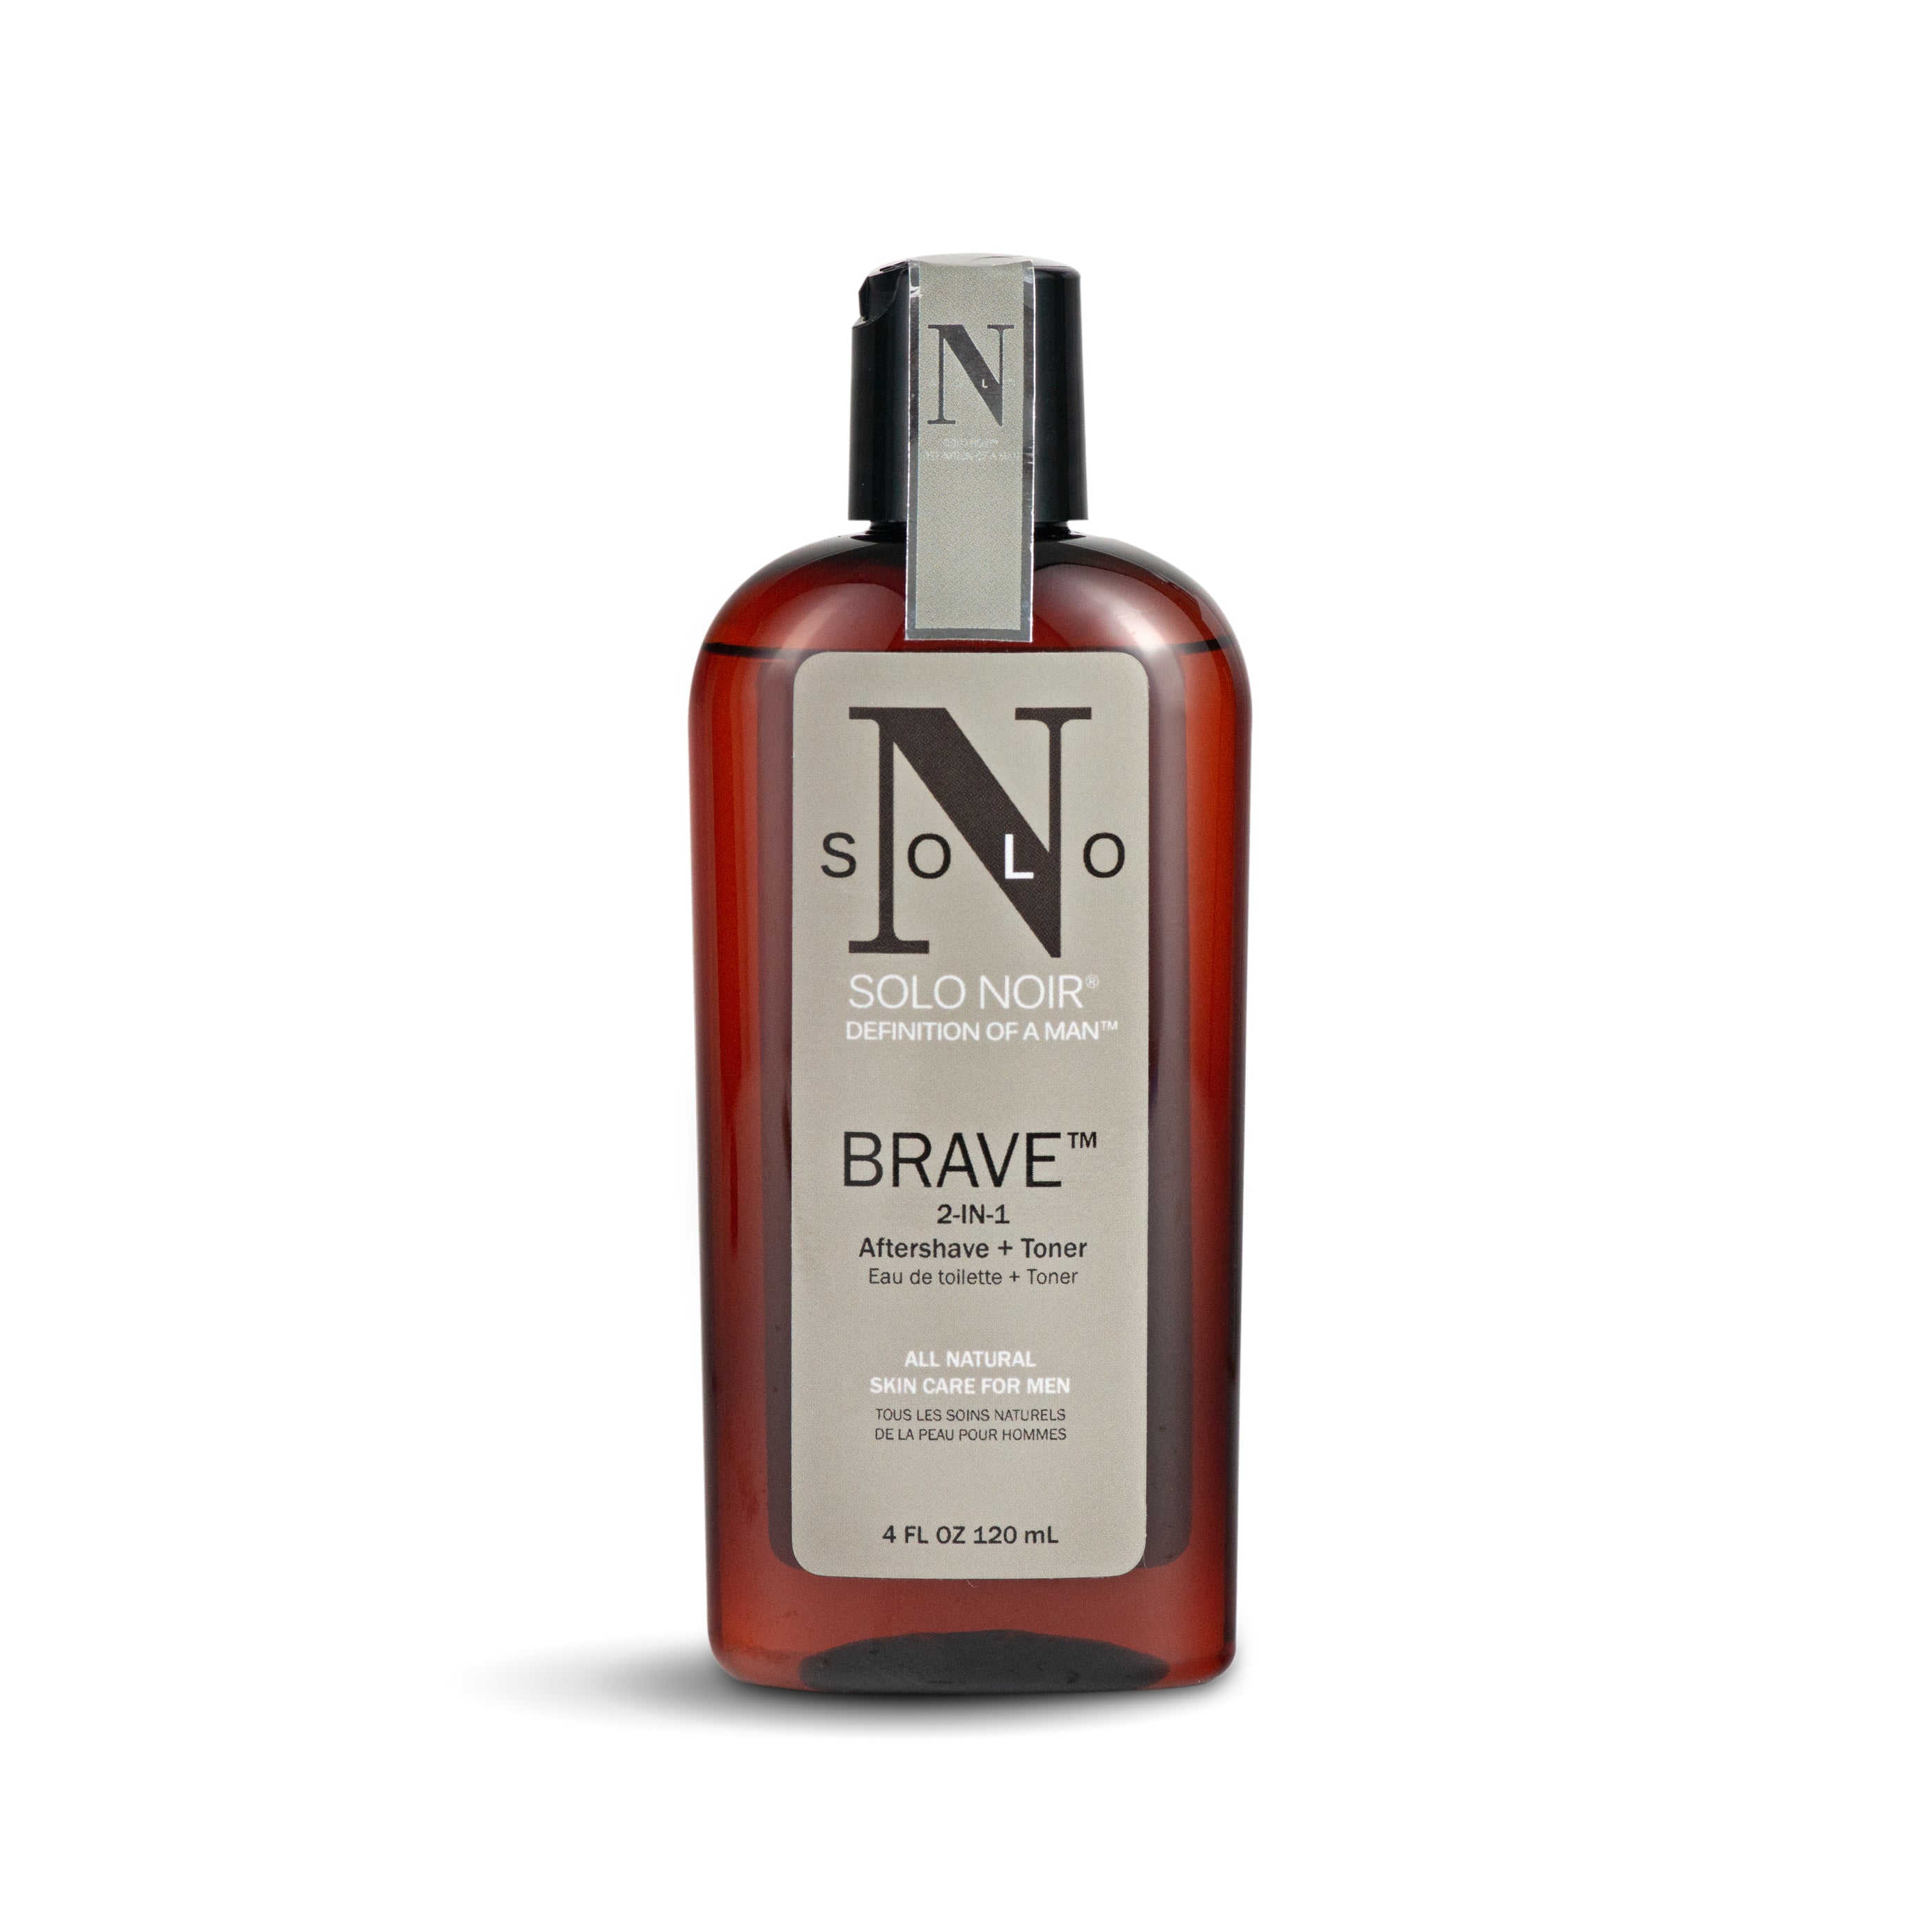 “Brave™” Aftershave + Toner